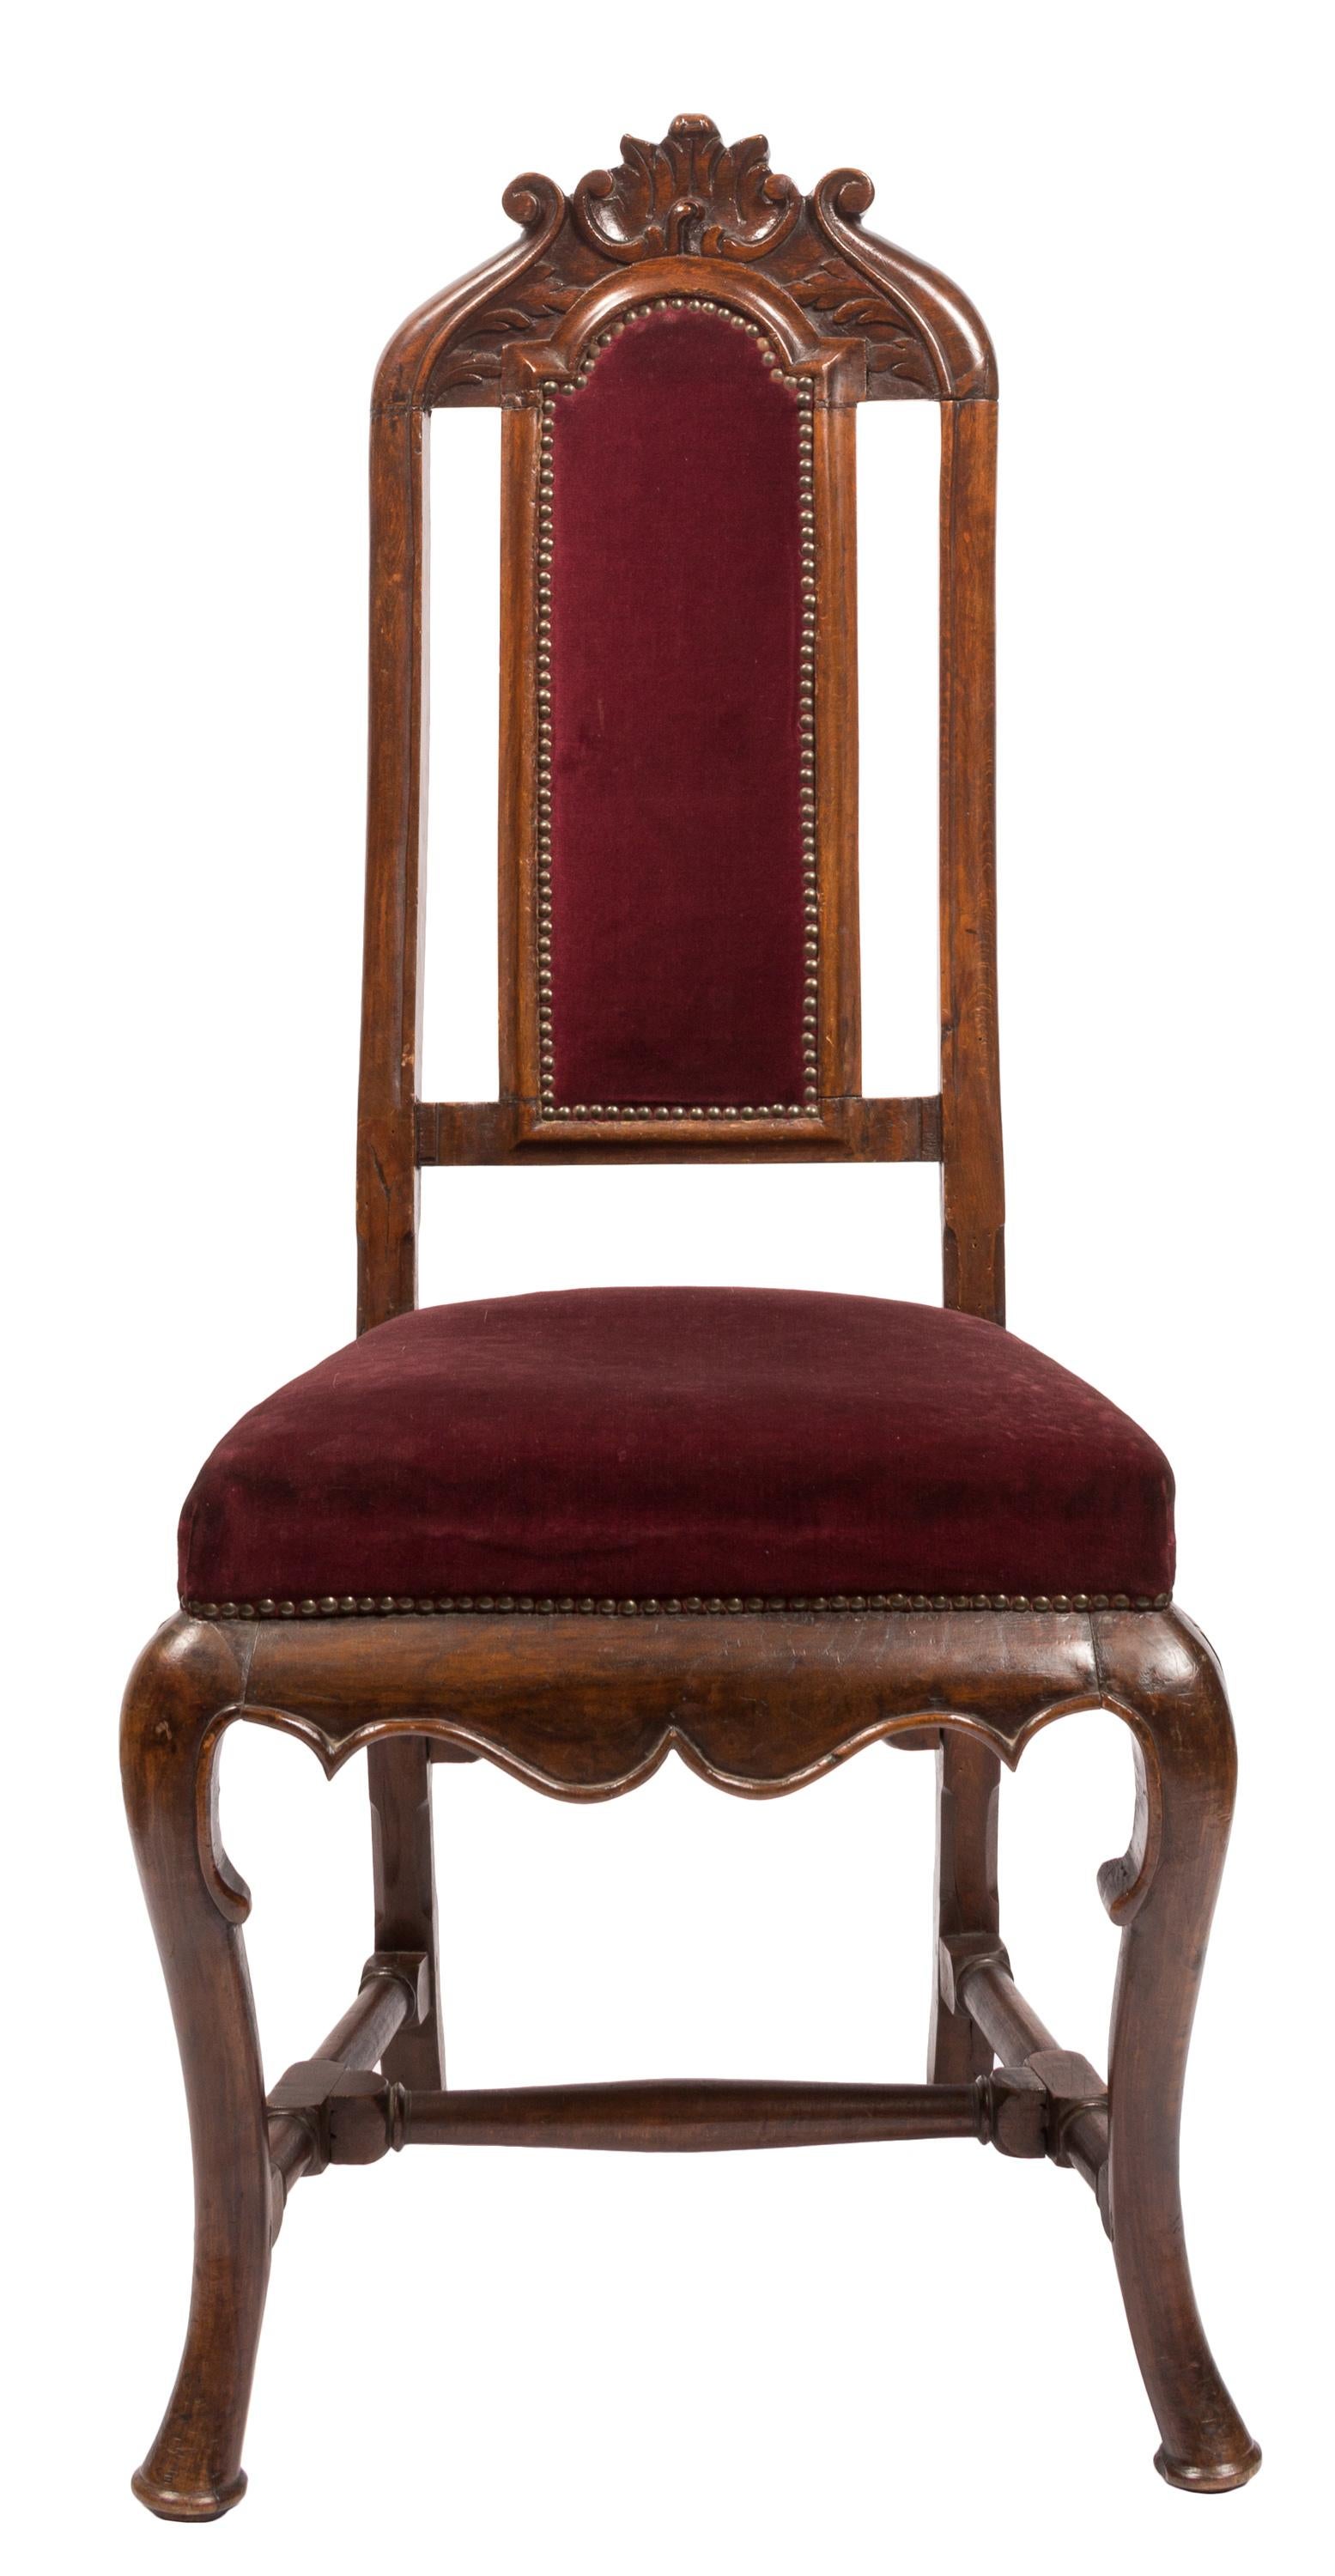 Paar passende Beistellstühle aus dem 18. Jahrhundert im William & Mary-Übergang zum Queen Anne-Stil mit handgeschnitzten Details. Gepolstert mit burgunderrotem Samtstoff und mit Messing vernagelten Kanten. Die in Spanien aus einheimischem